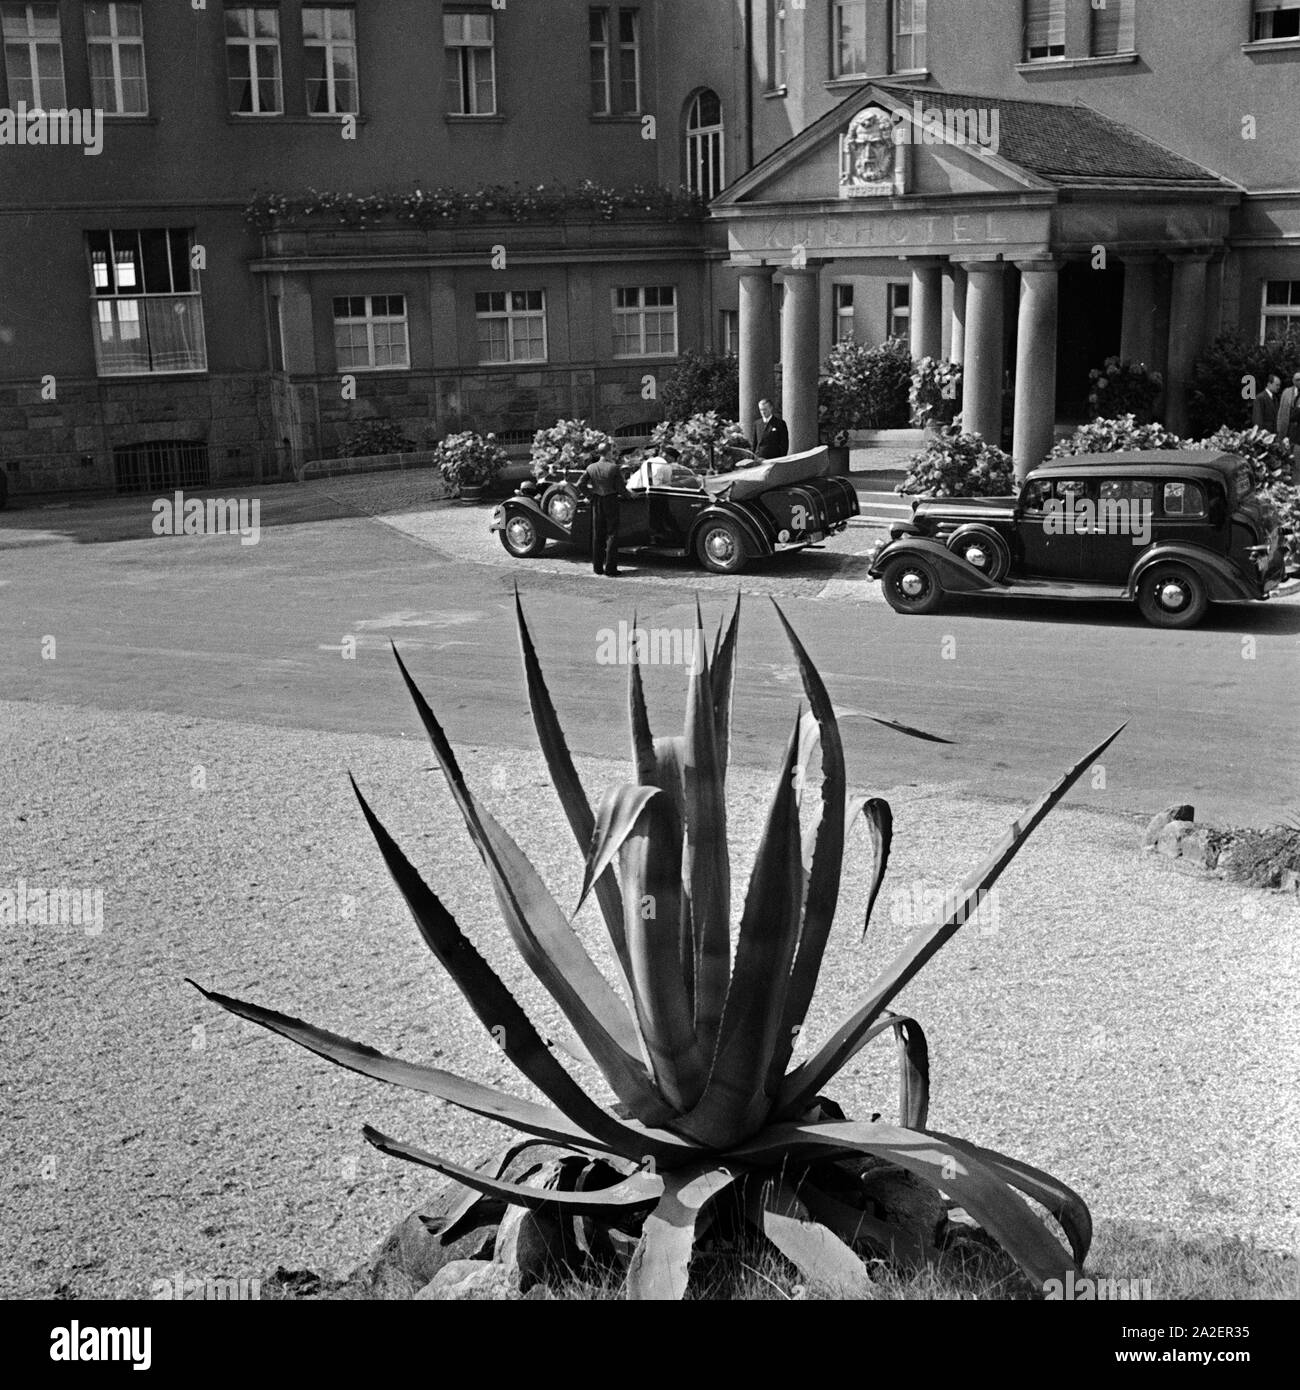 Zwei edle Karossen parken vor dem Kurhotel Mülhens auf dem Petersberg im Siebengebirge bei Bonn, Deutschland 1930er Jahre. Zwei edlen Autos parken am Eingang des Spa Resort Muelhens auf dem Petersberg bei Bonn, Deutschland 1930. Stockfoto